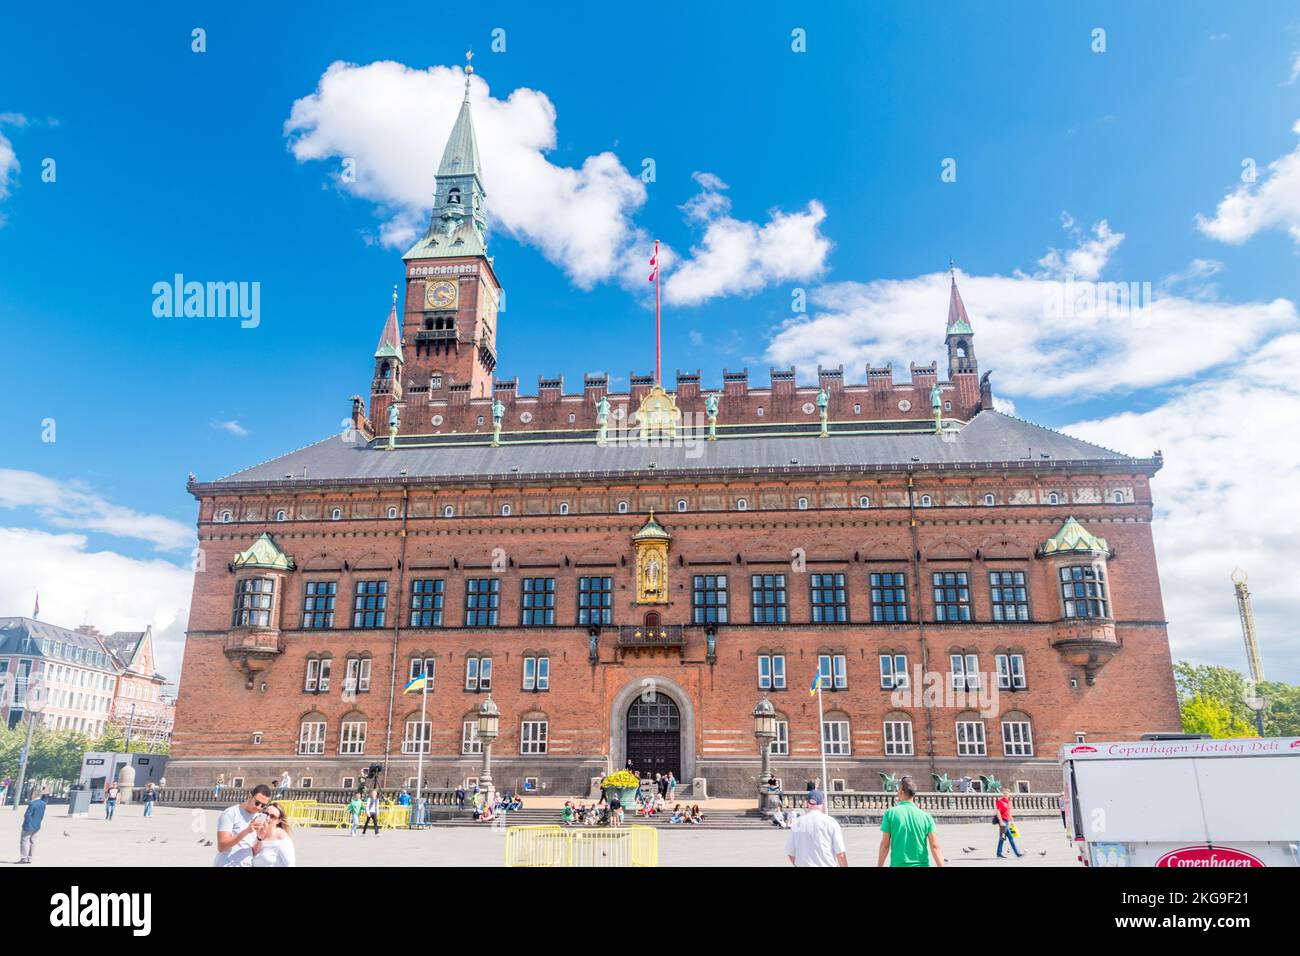 Copenhague, Danemark - 26 juillet 2022 : l'hôtel de ville de Copenhague (en danois : Kobenhavns Radhus) est le siège du Conseil municipal de Copenhague. Banque D'Images